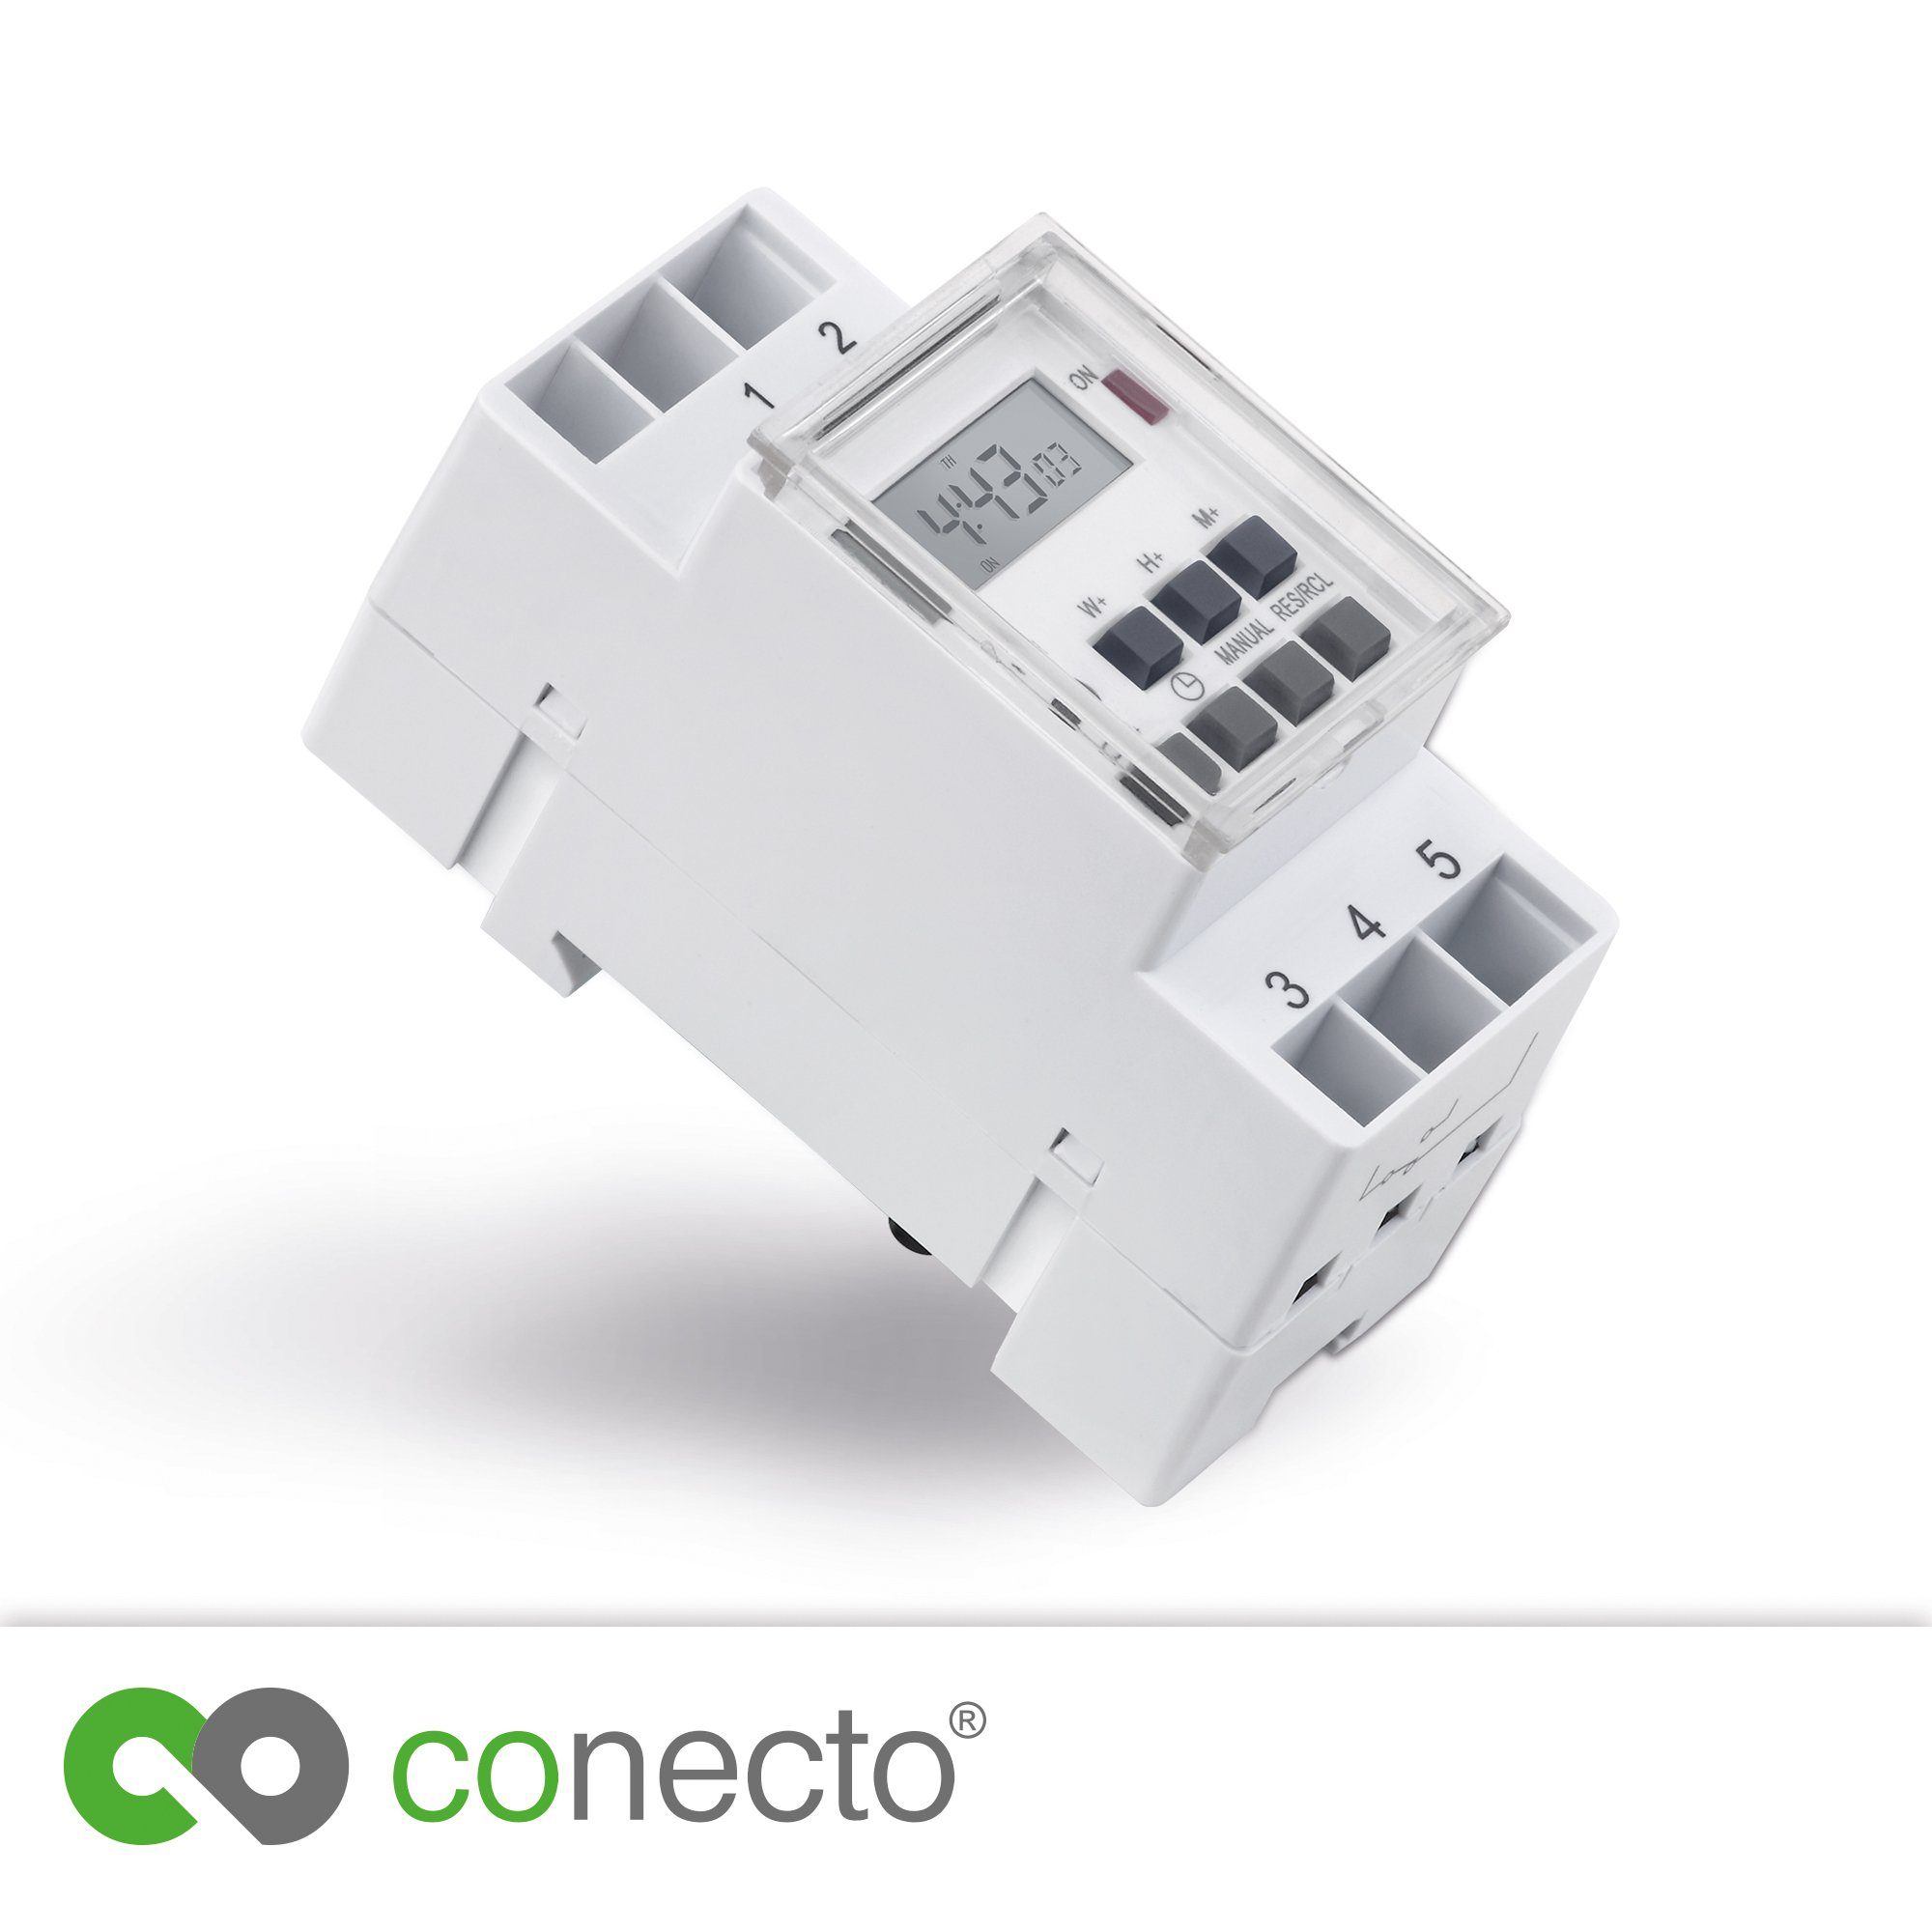 Digitale conecto IP20, conecto für Watt, Hutschienen, 3600 Zeitschaltuhr weiß Zeitschaltuhr